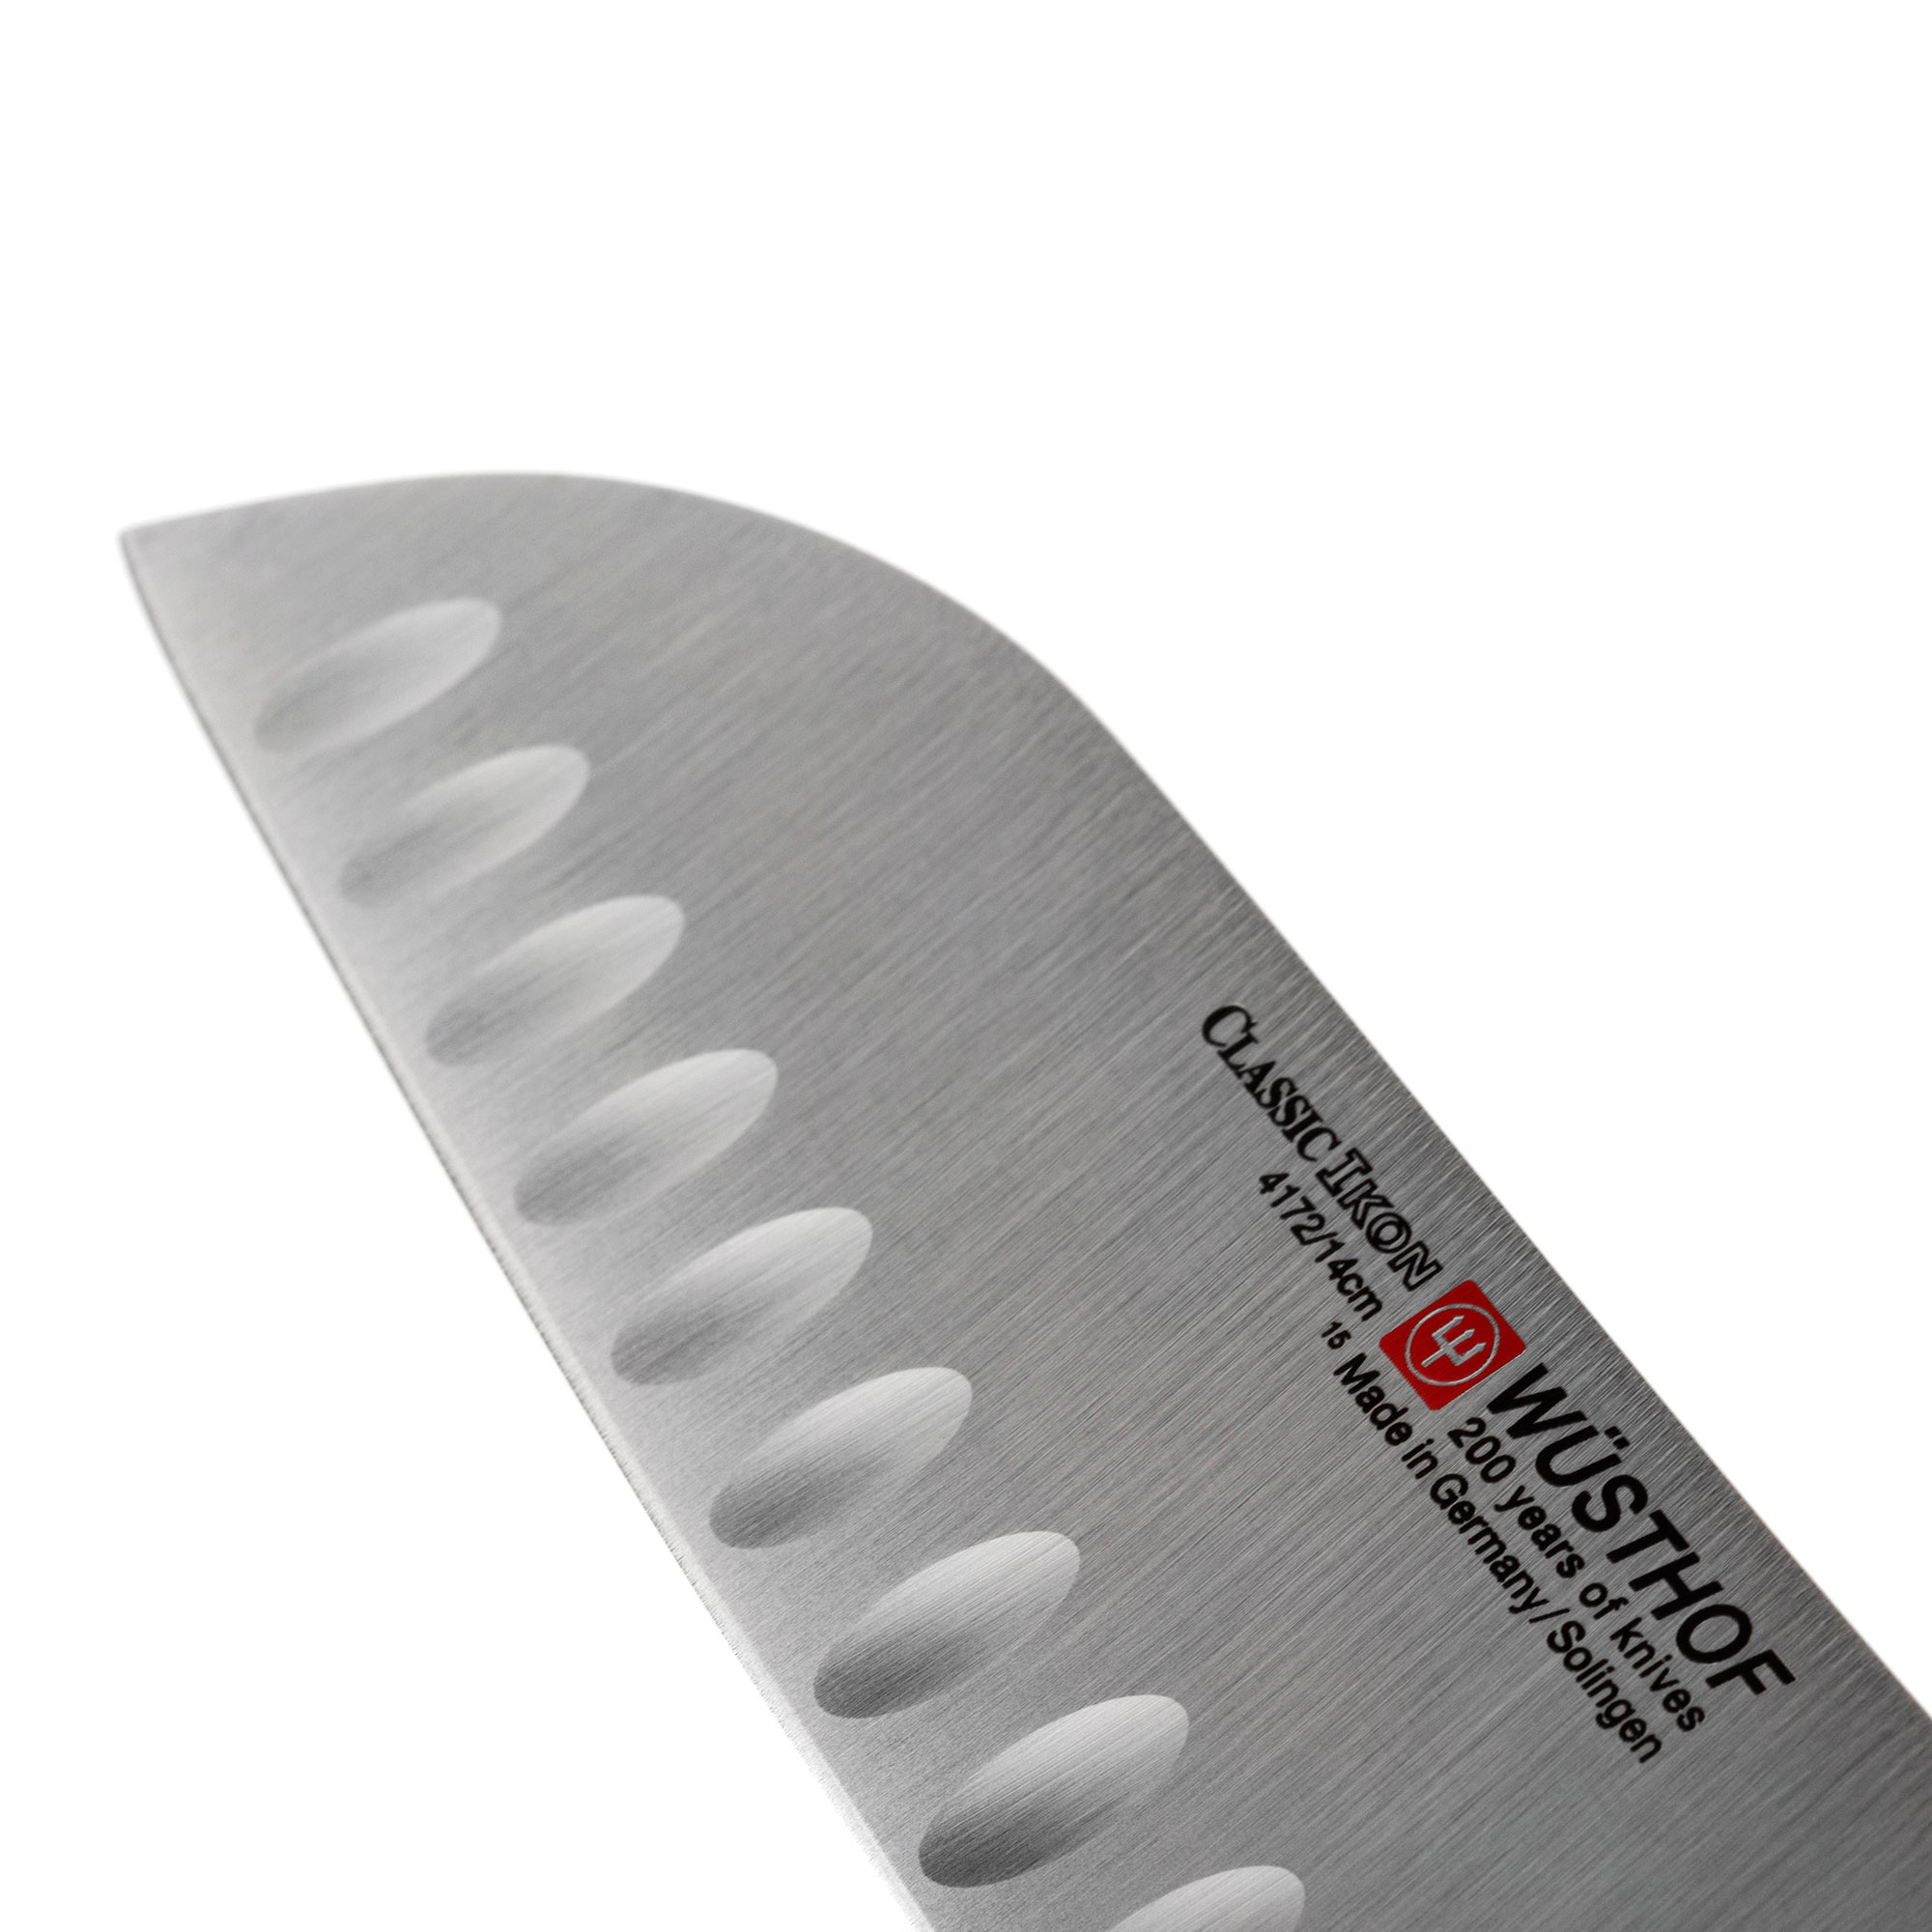 Нож кухонный Сантоку с углублениями на кромке 14 см, Classic Ikon, WUESTHOF, Золинген, Германия